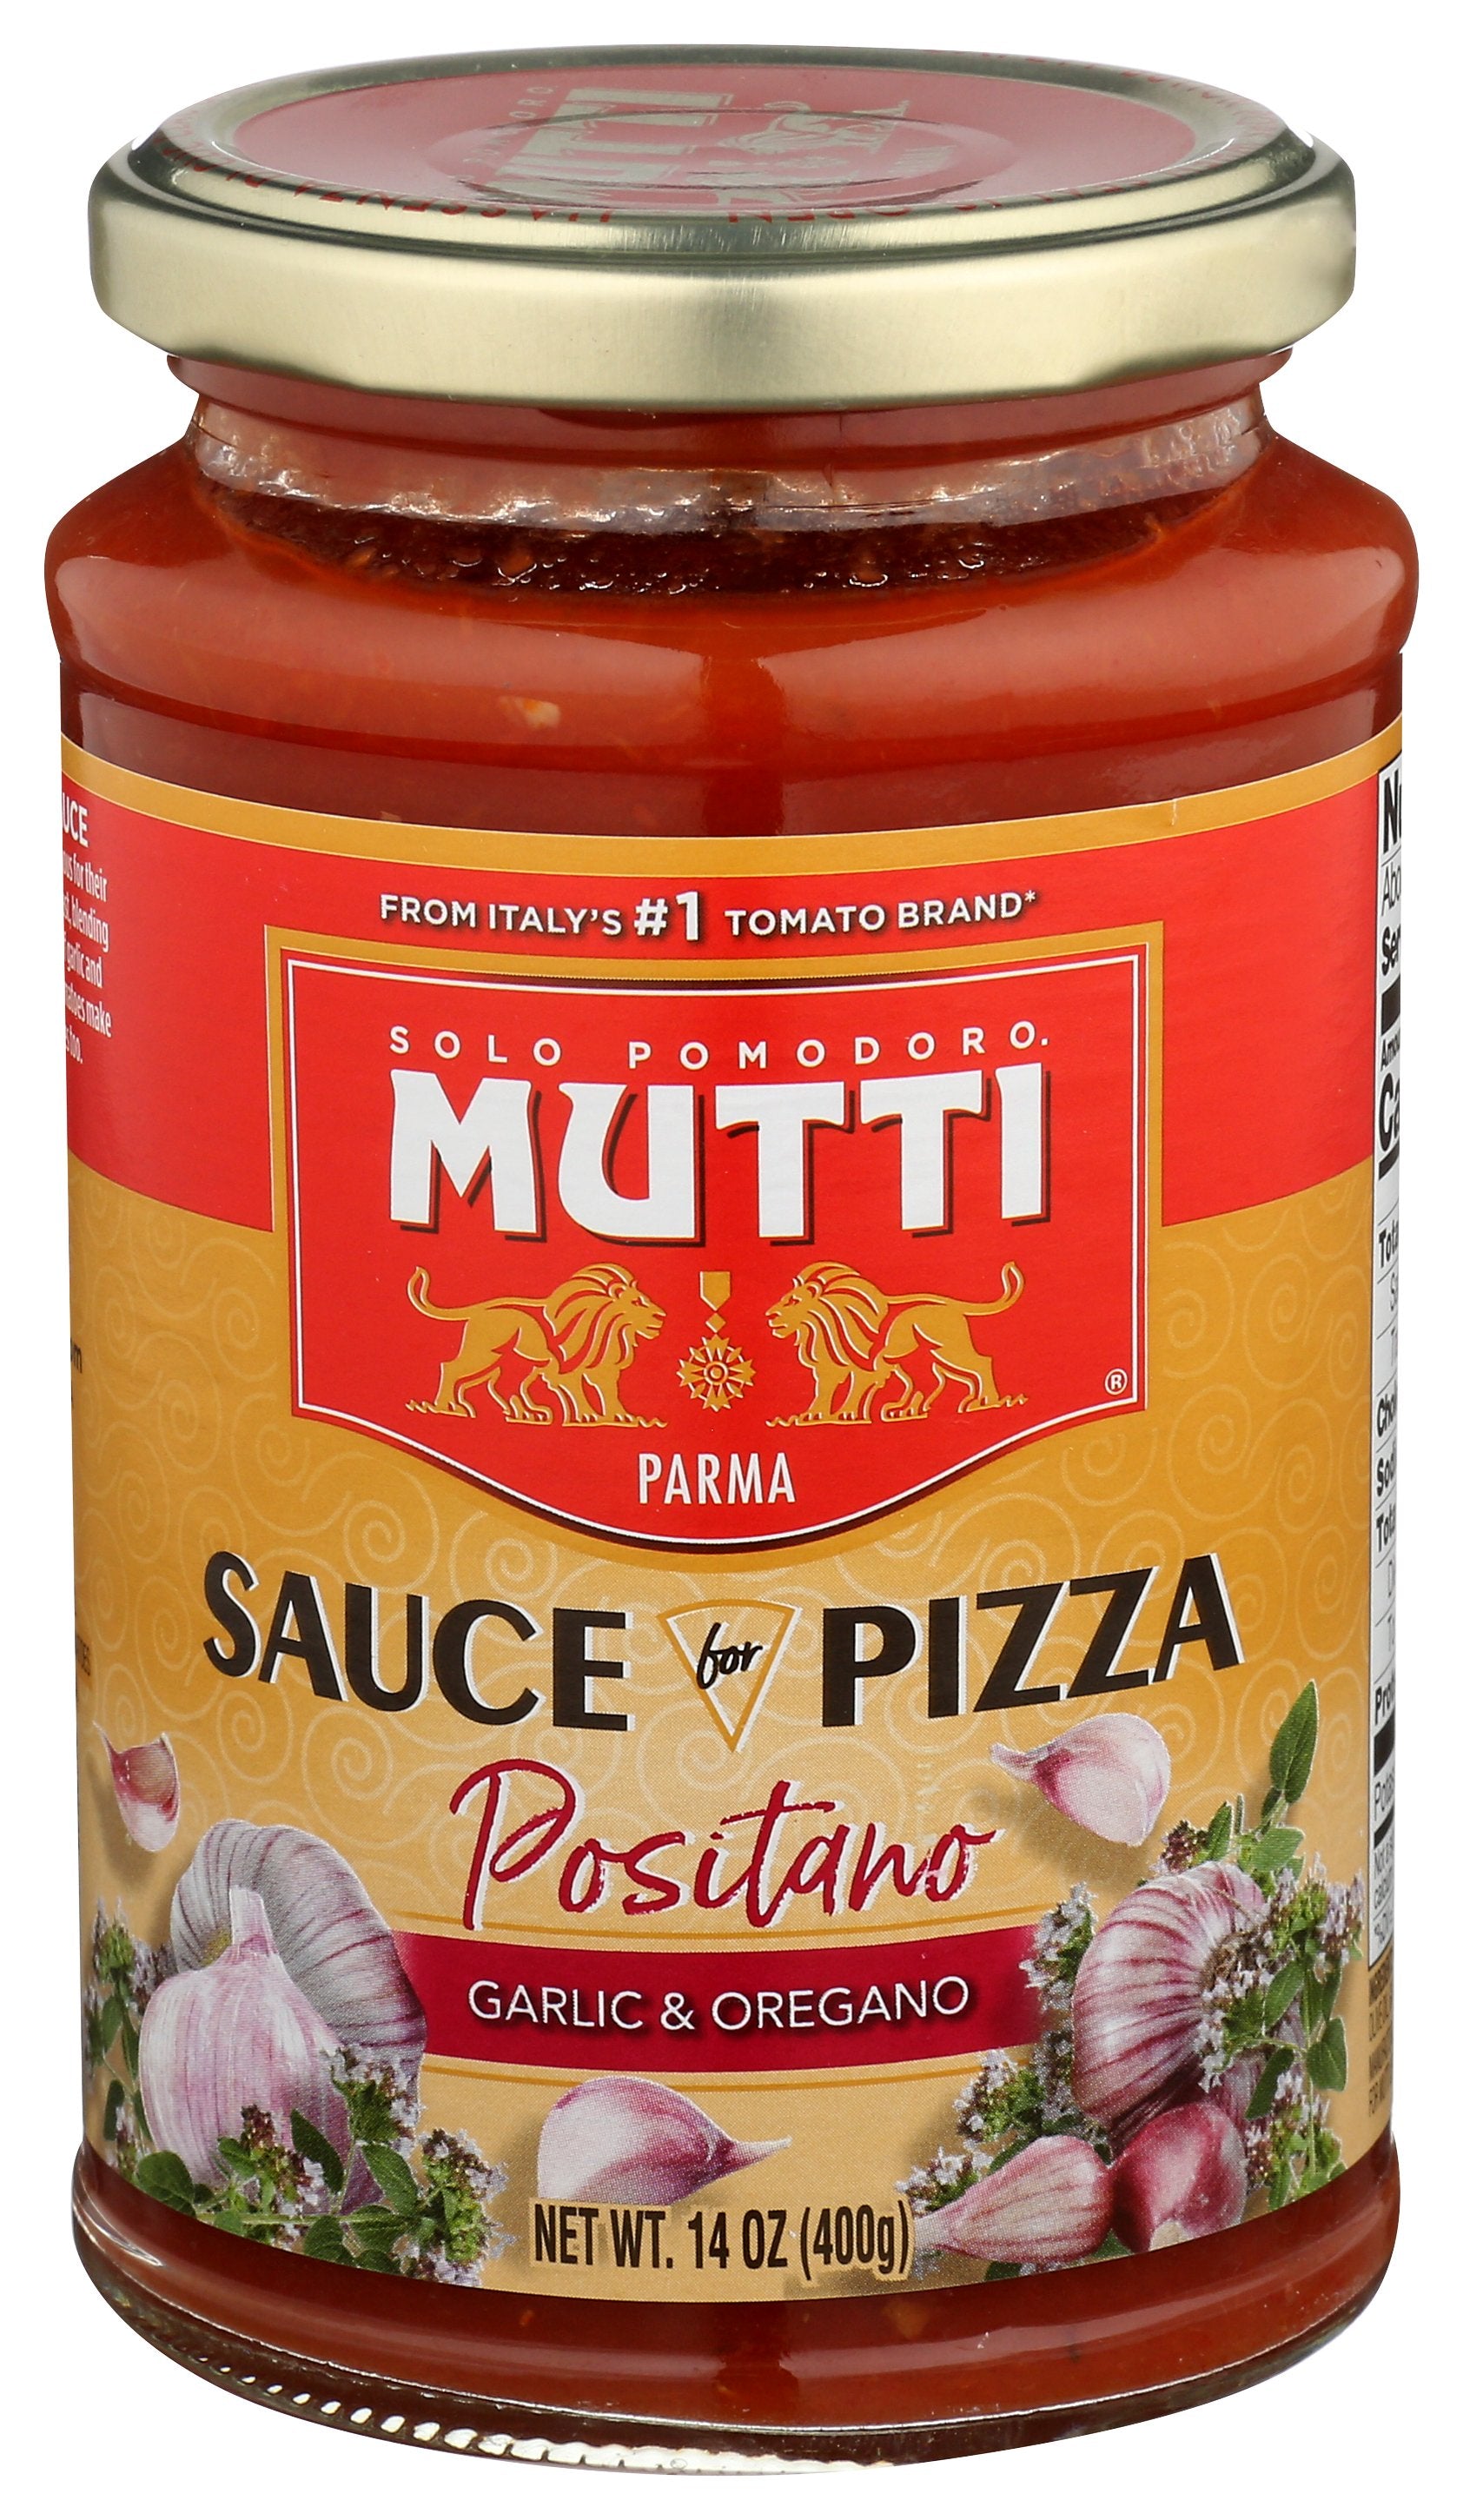 MUTTI SAUCE PIZZA GRLIC OREGANO - Case of 6